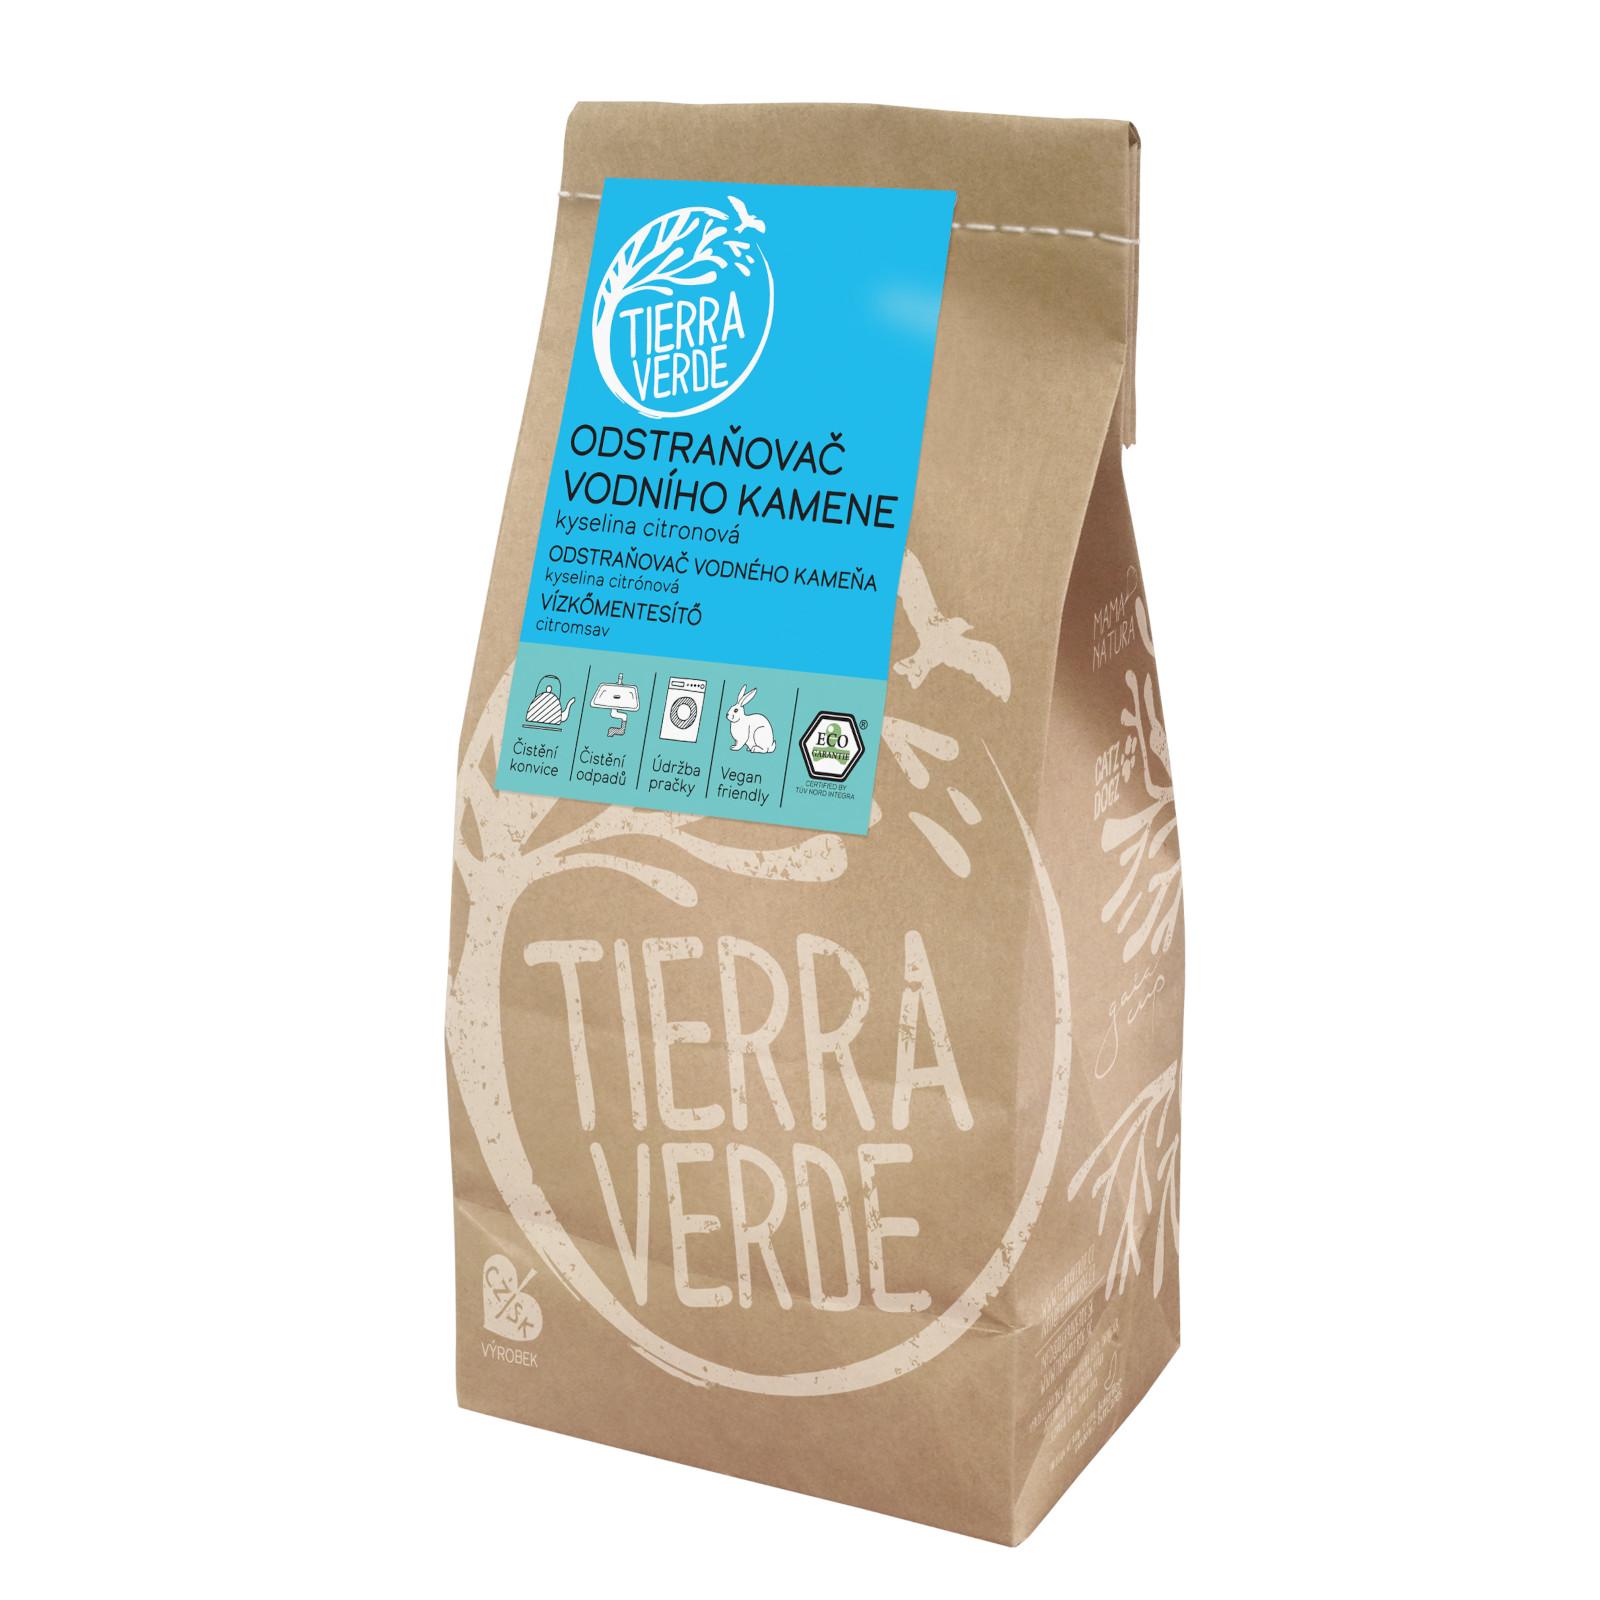 Tierra Verde Odstraňovač vodního kamene 1 kg